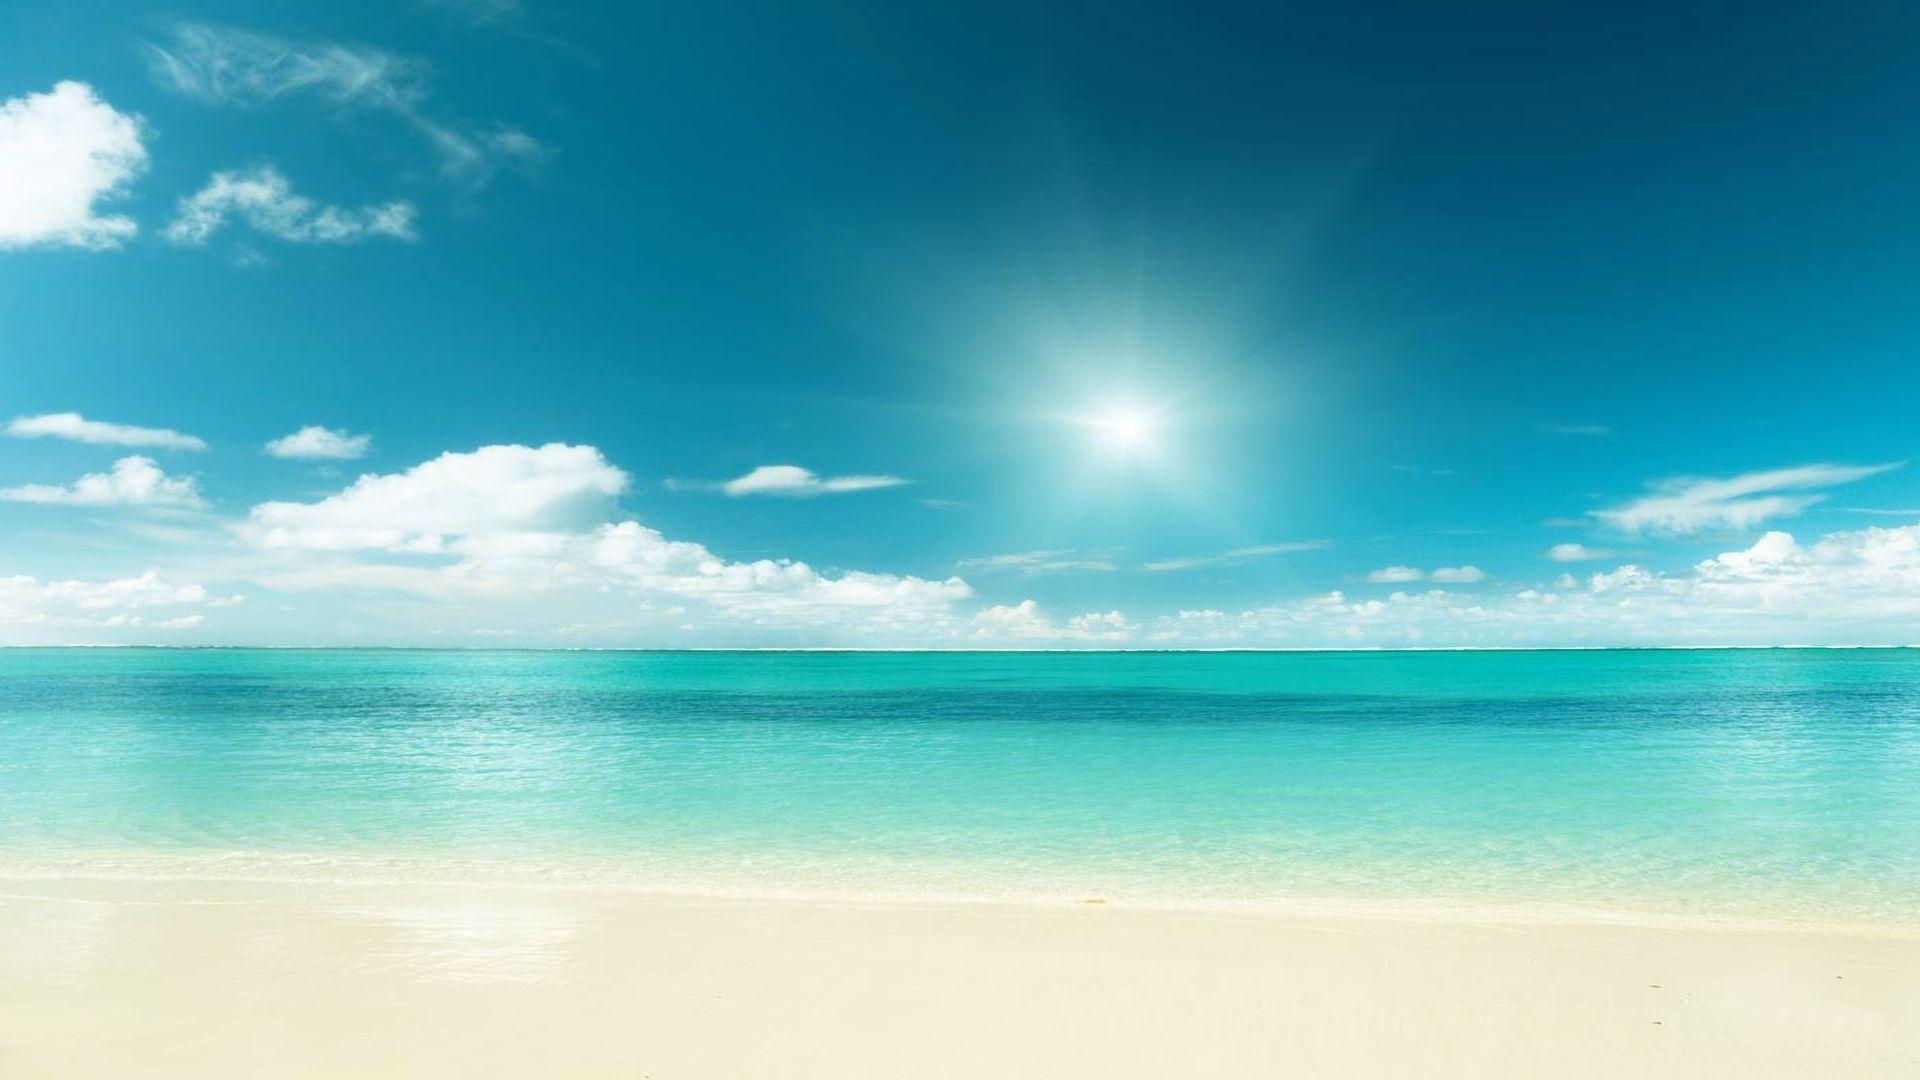 Bãi biển xanh (blue beach): Cảm nhận sự mát mẻ của dòng nước trong xanh, khi tắm trong những bãi biển xanh ngắt đầy hoang sơ. Chúng ta sẽ không thể ngừng tha hồ ngắm nhìn cảnh quan thiên nhiên tuyệt đẹp đó. Hãy xem hình ảnh sắc màu tuyệt đẹp này để cảm nhận sự hấp dẫn của bãi biển xanh trong mộng mơ!